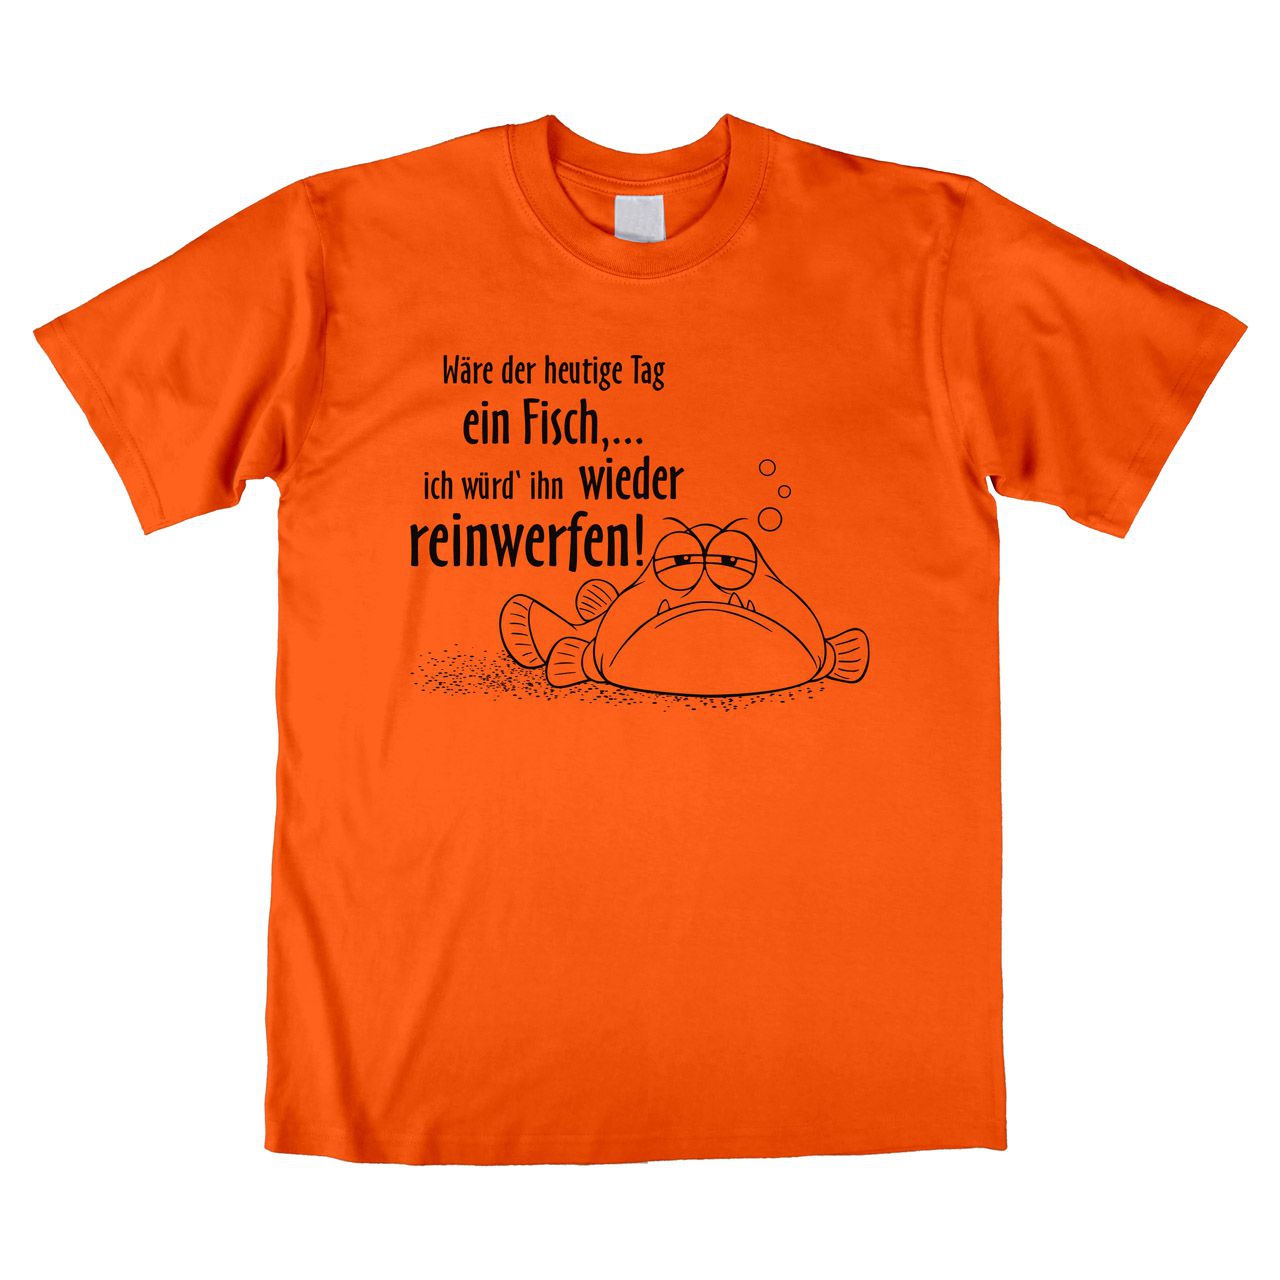 Wäre der heutige Tag ein Fisch Unisex T-Shirt orange Medium